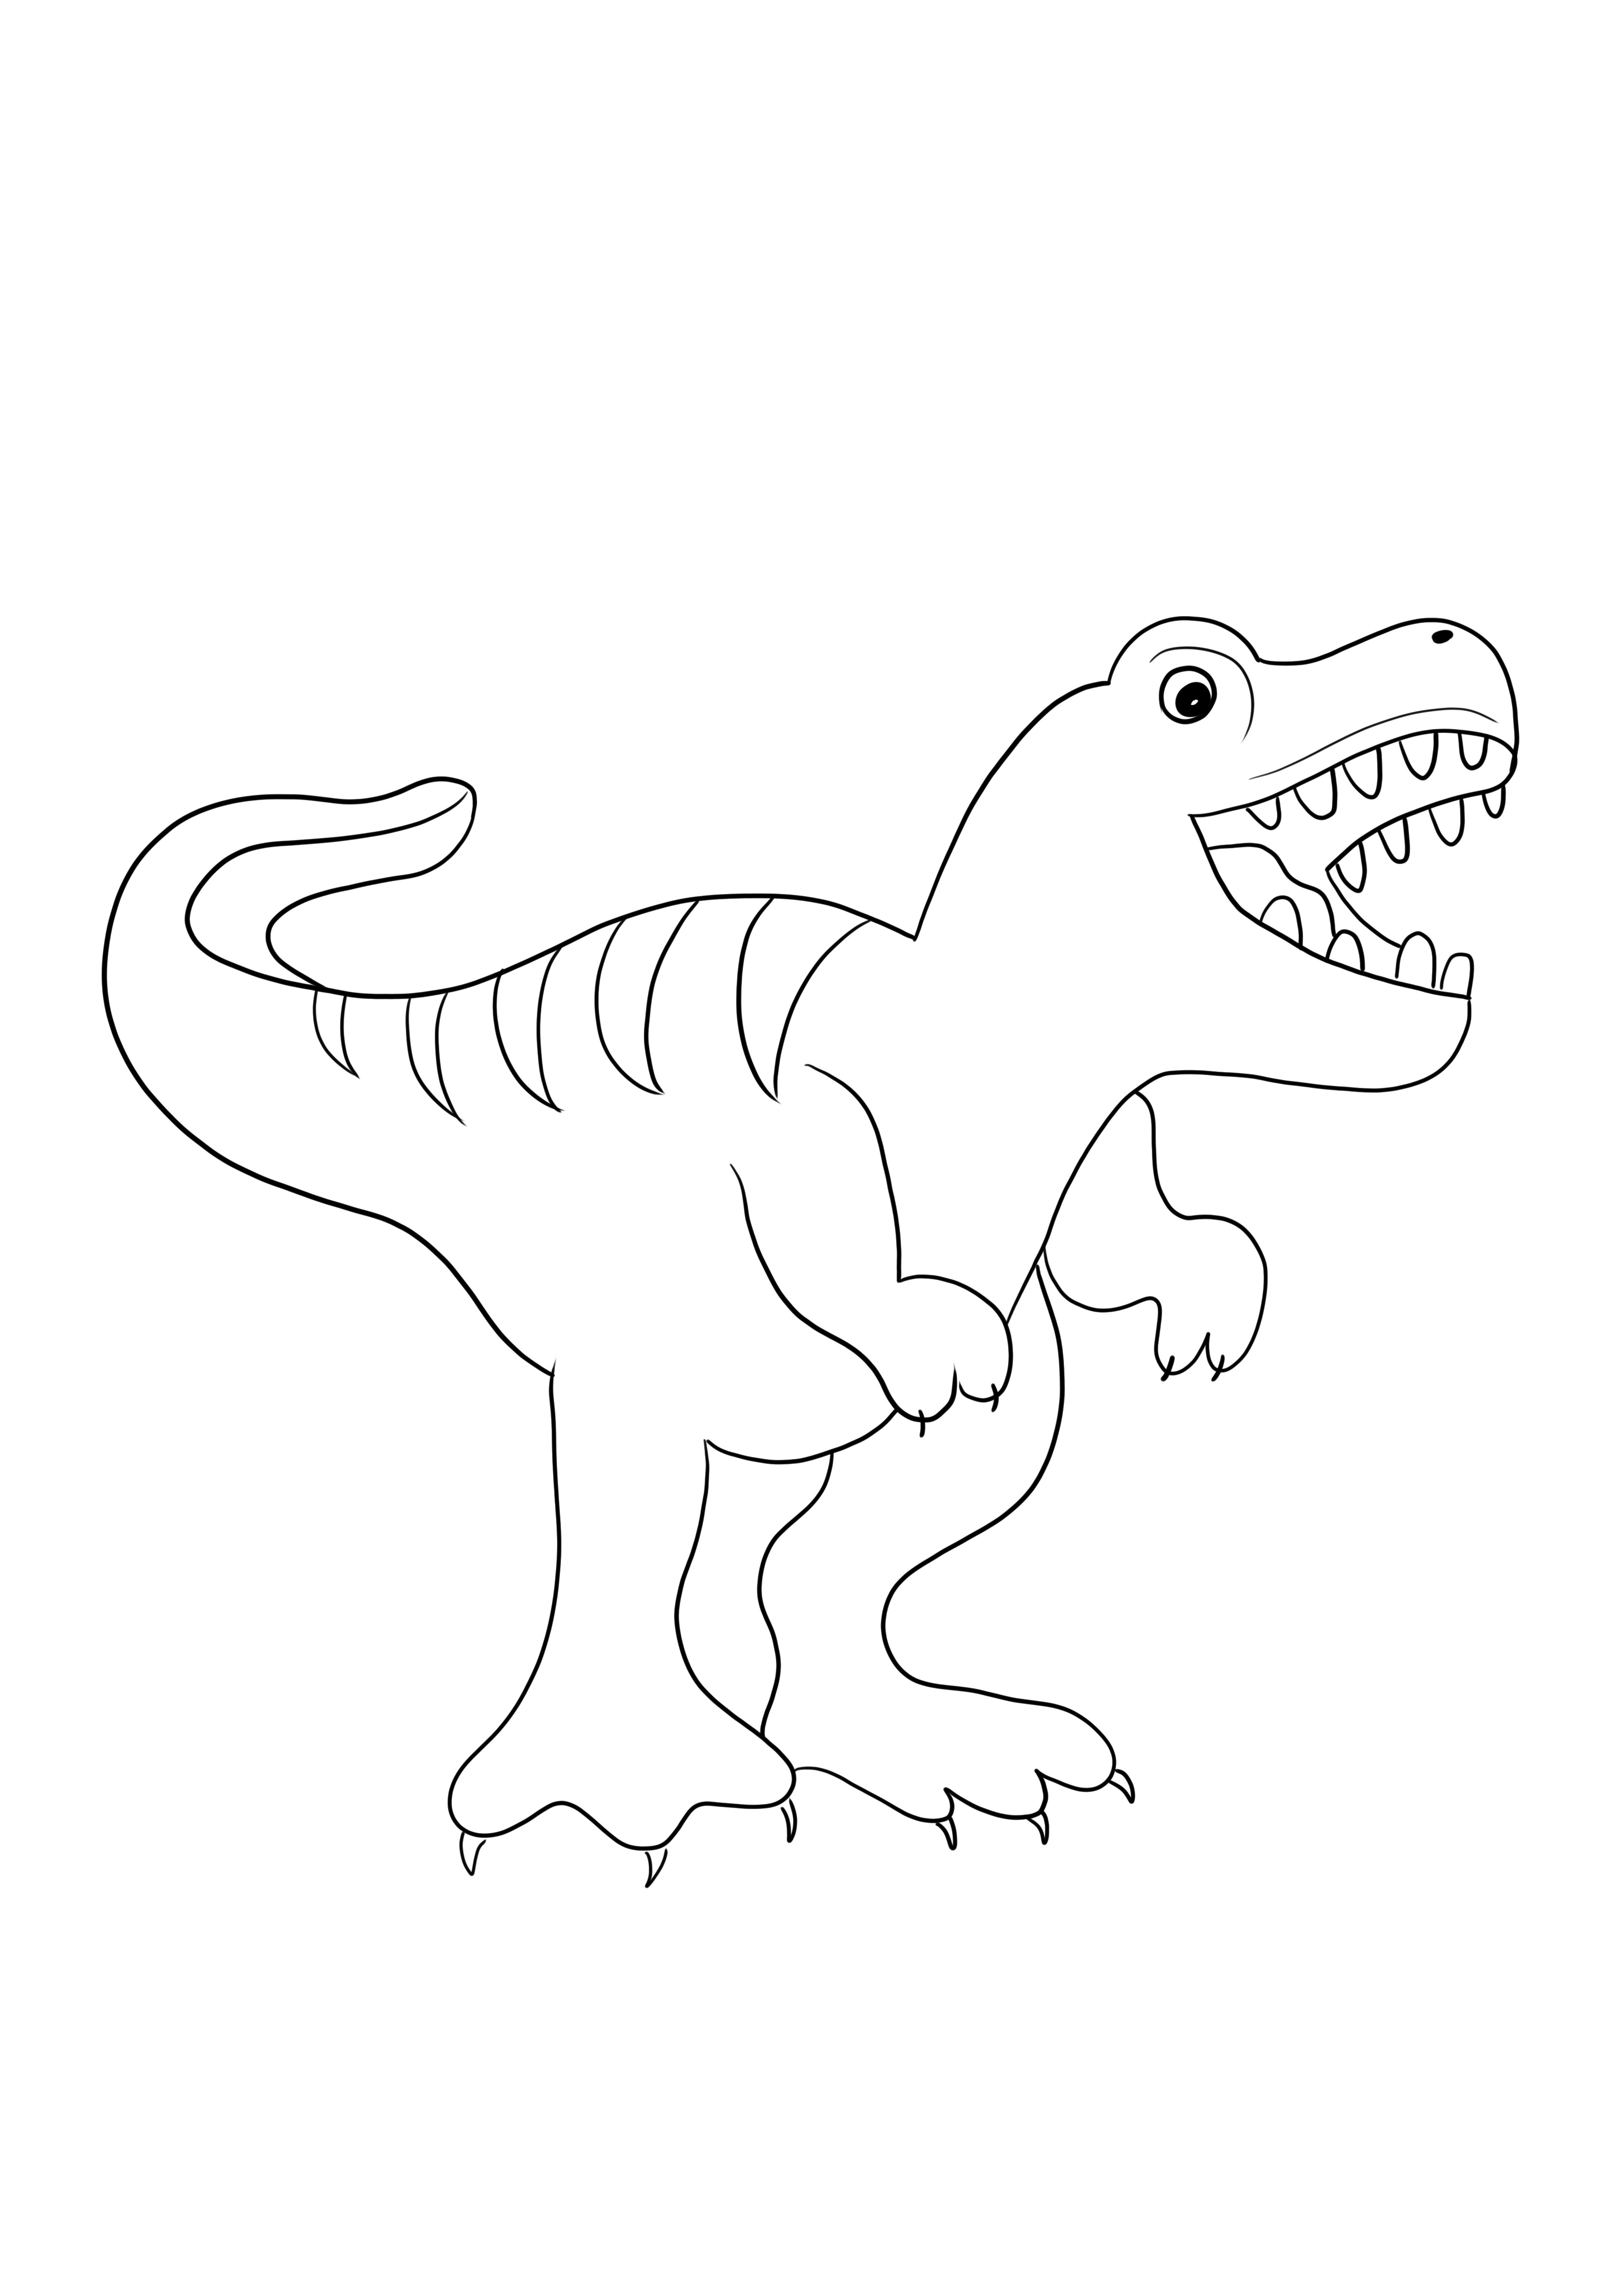 T-rex emoji rengi ve ücretsiz resim indir